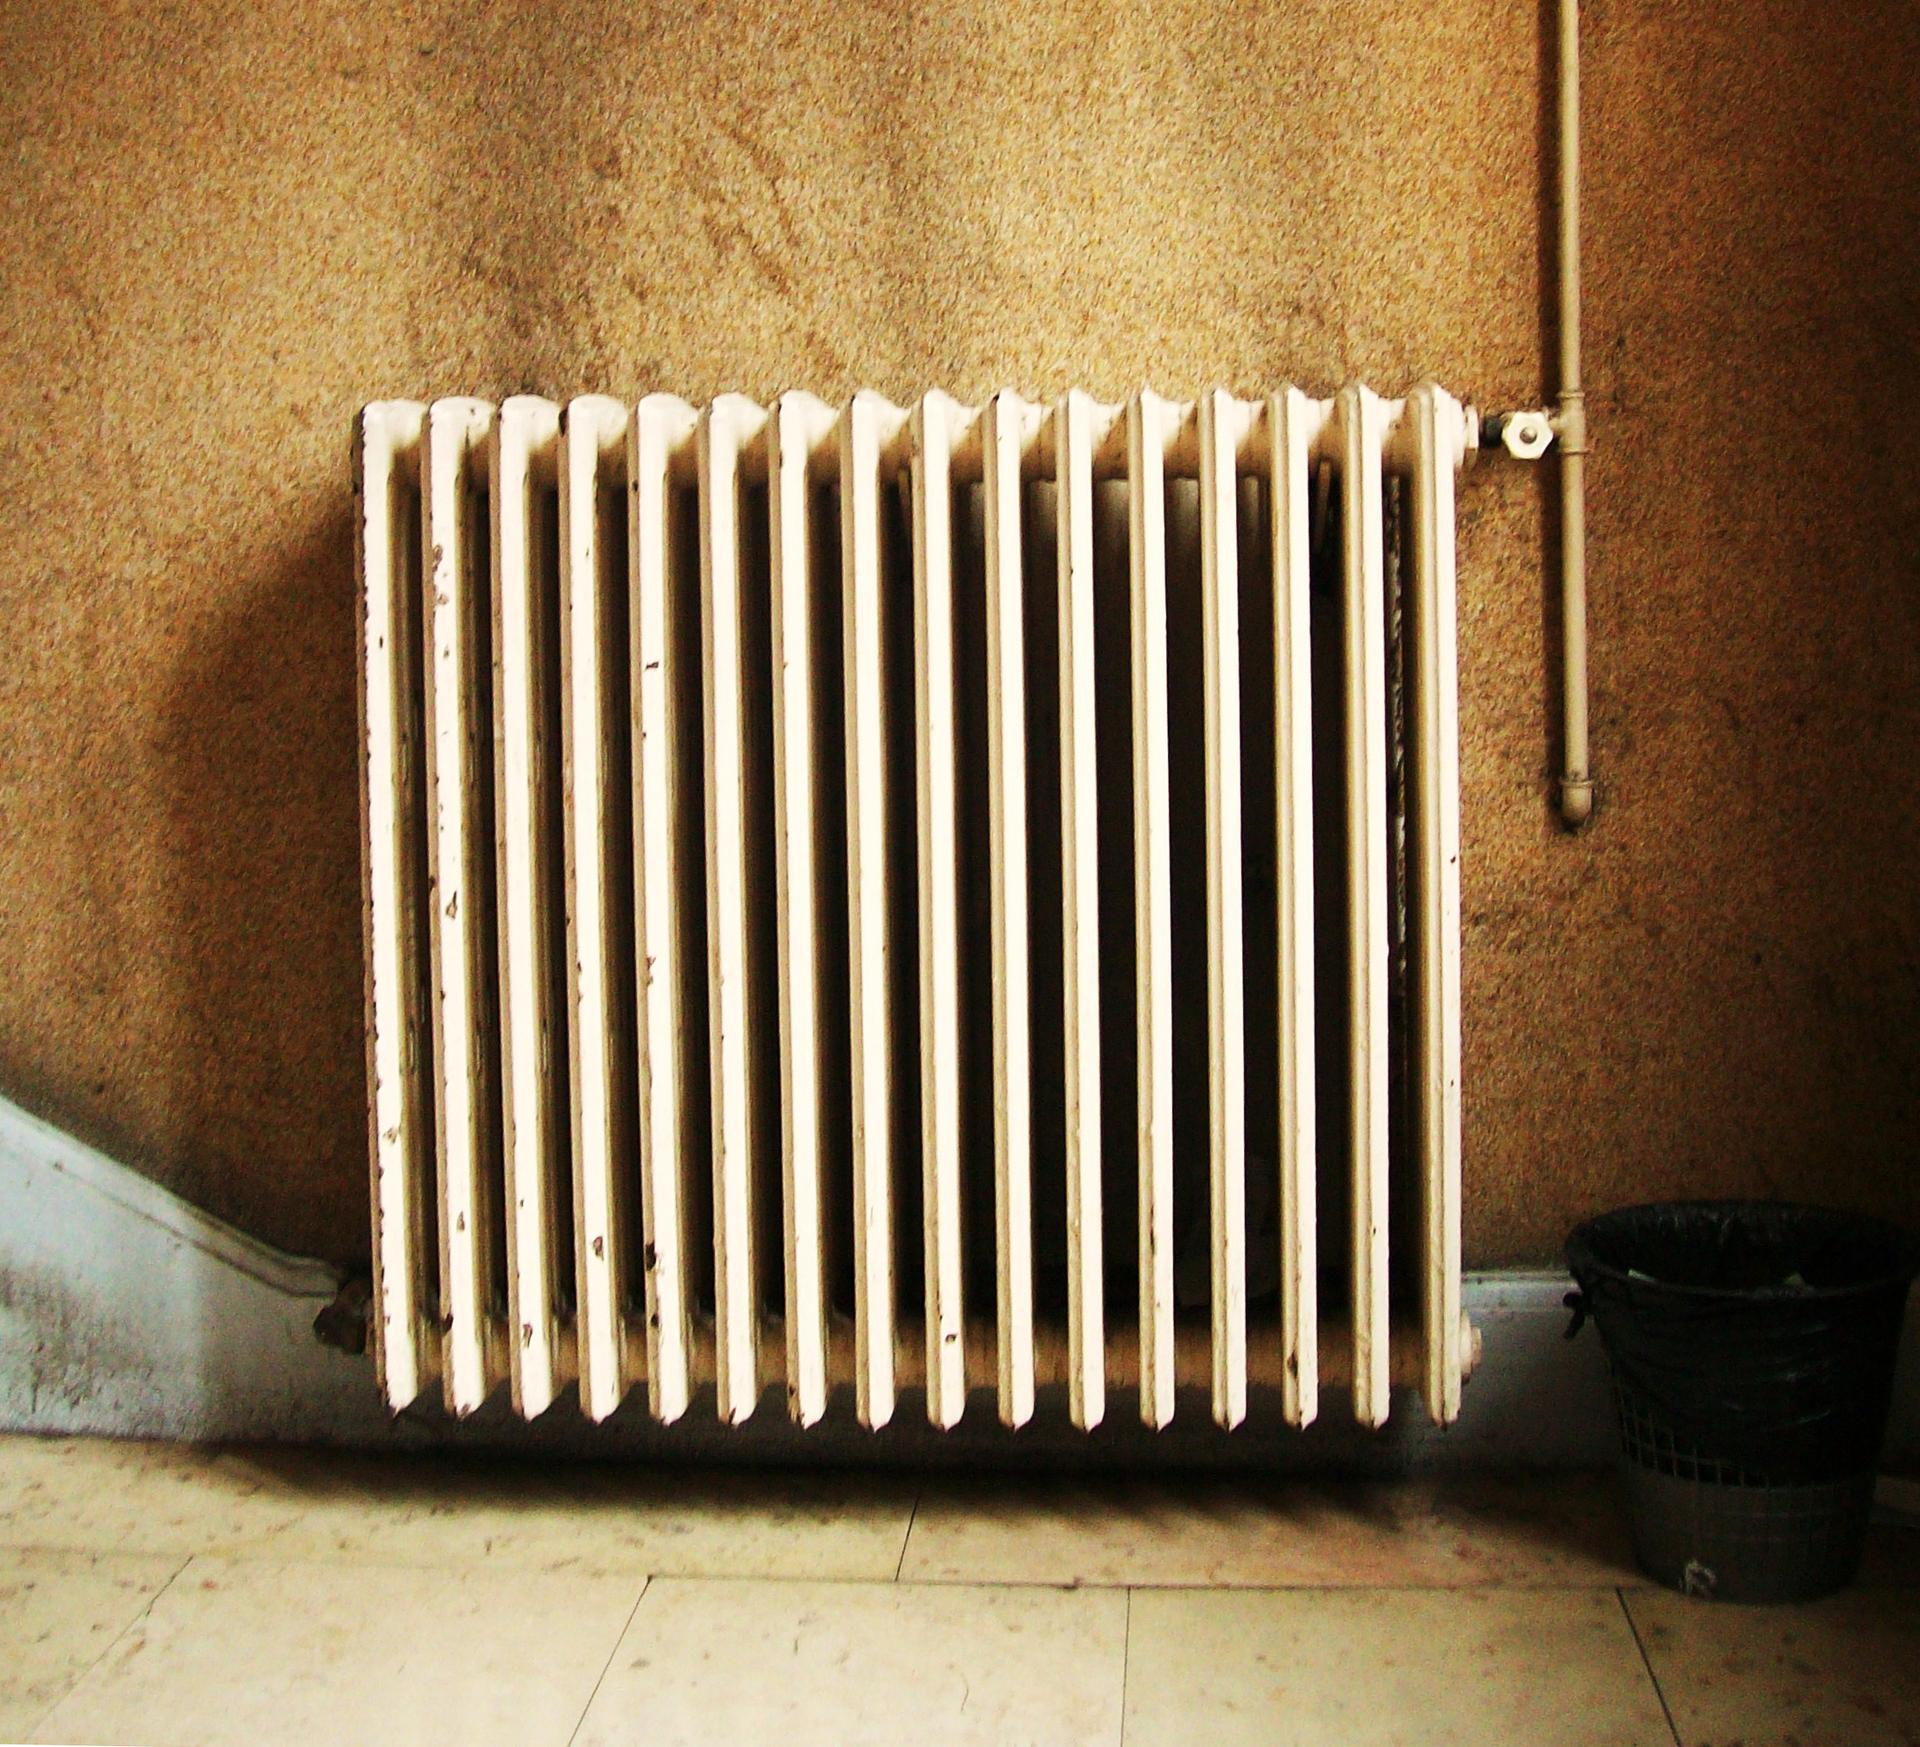 A building radiator in Paris